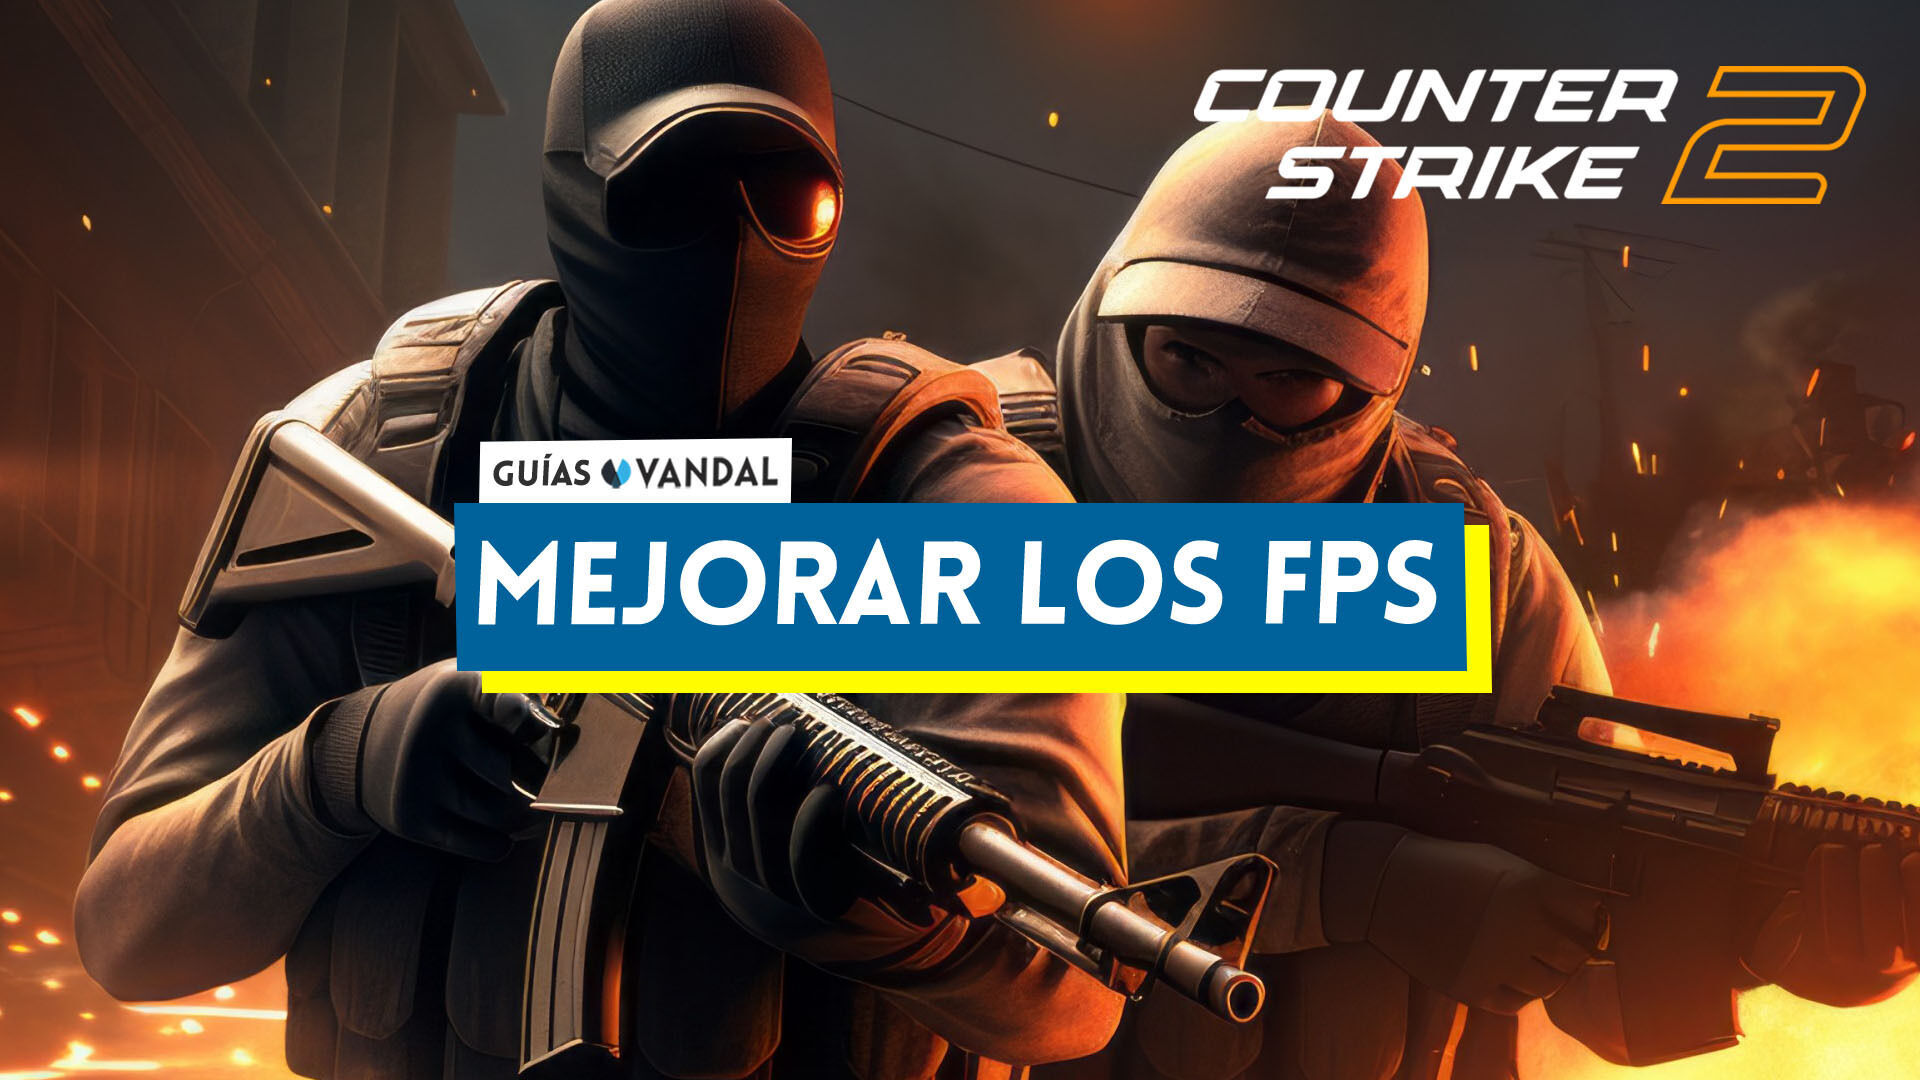 La mejor configuración de Counter-Strike 2 para obtener mejores FPS sin  perder calidad y ser competitivo